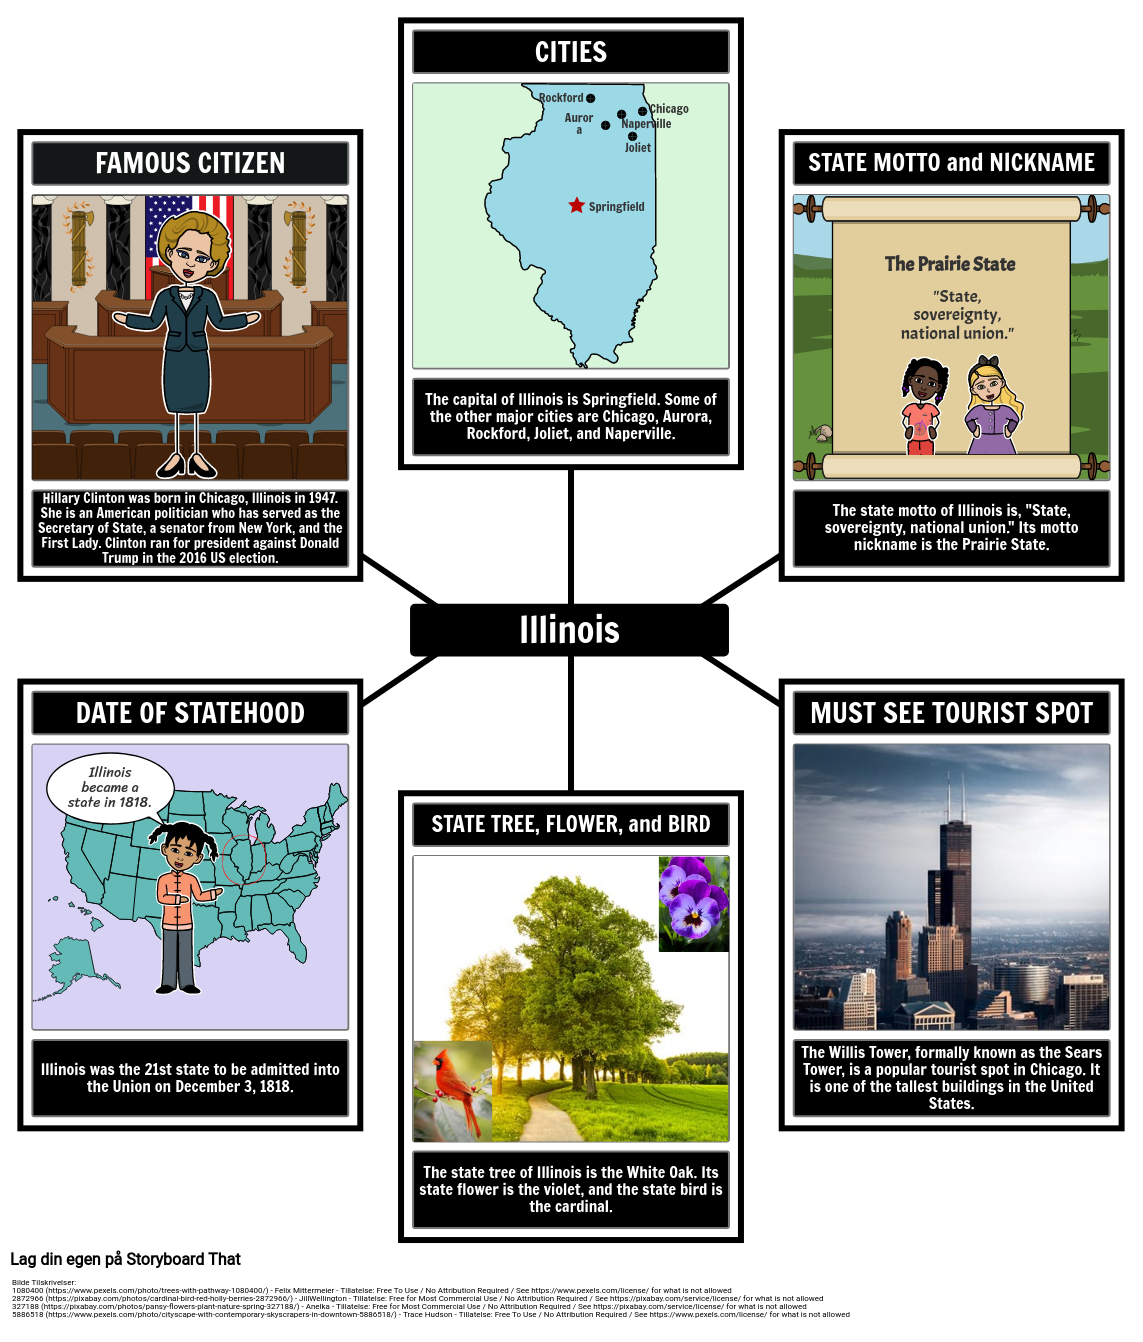 Fakta om Illinois